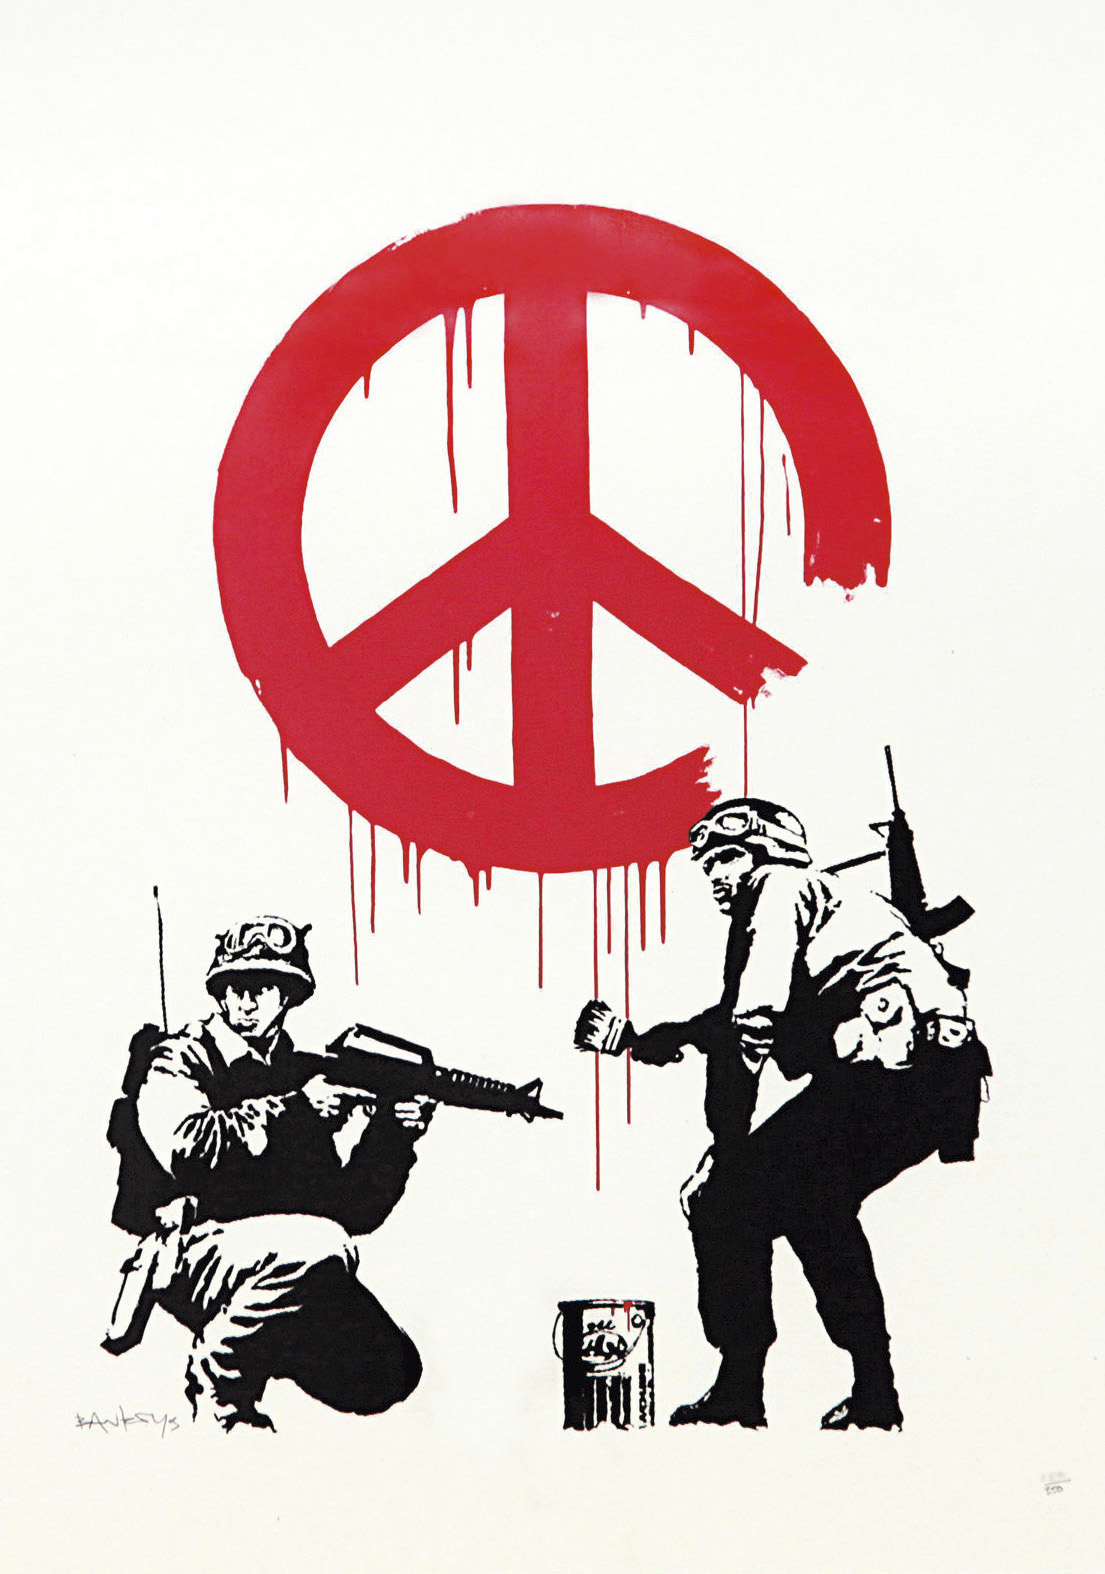 Le commandement selon Banksy